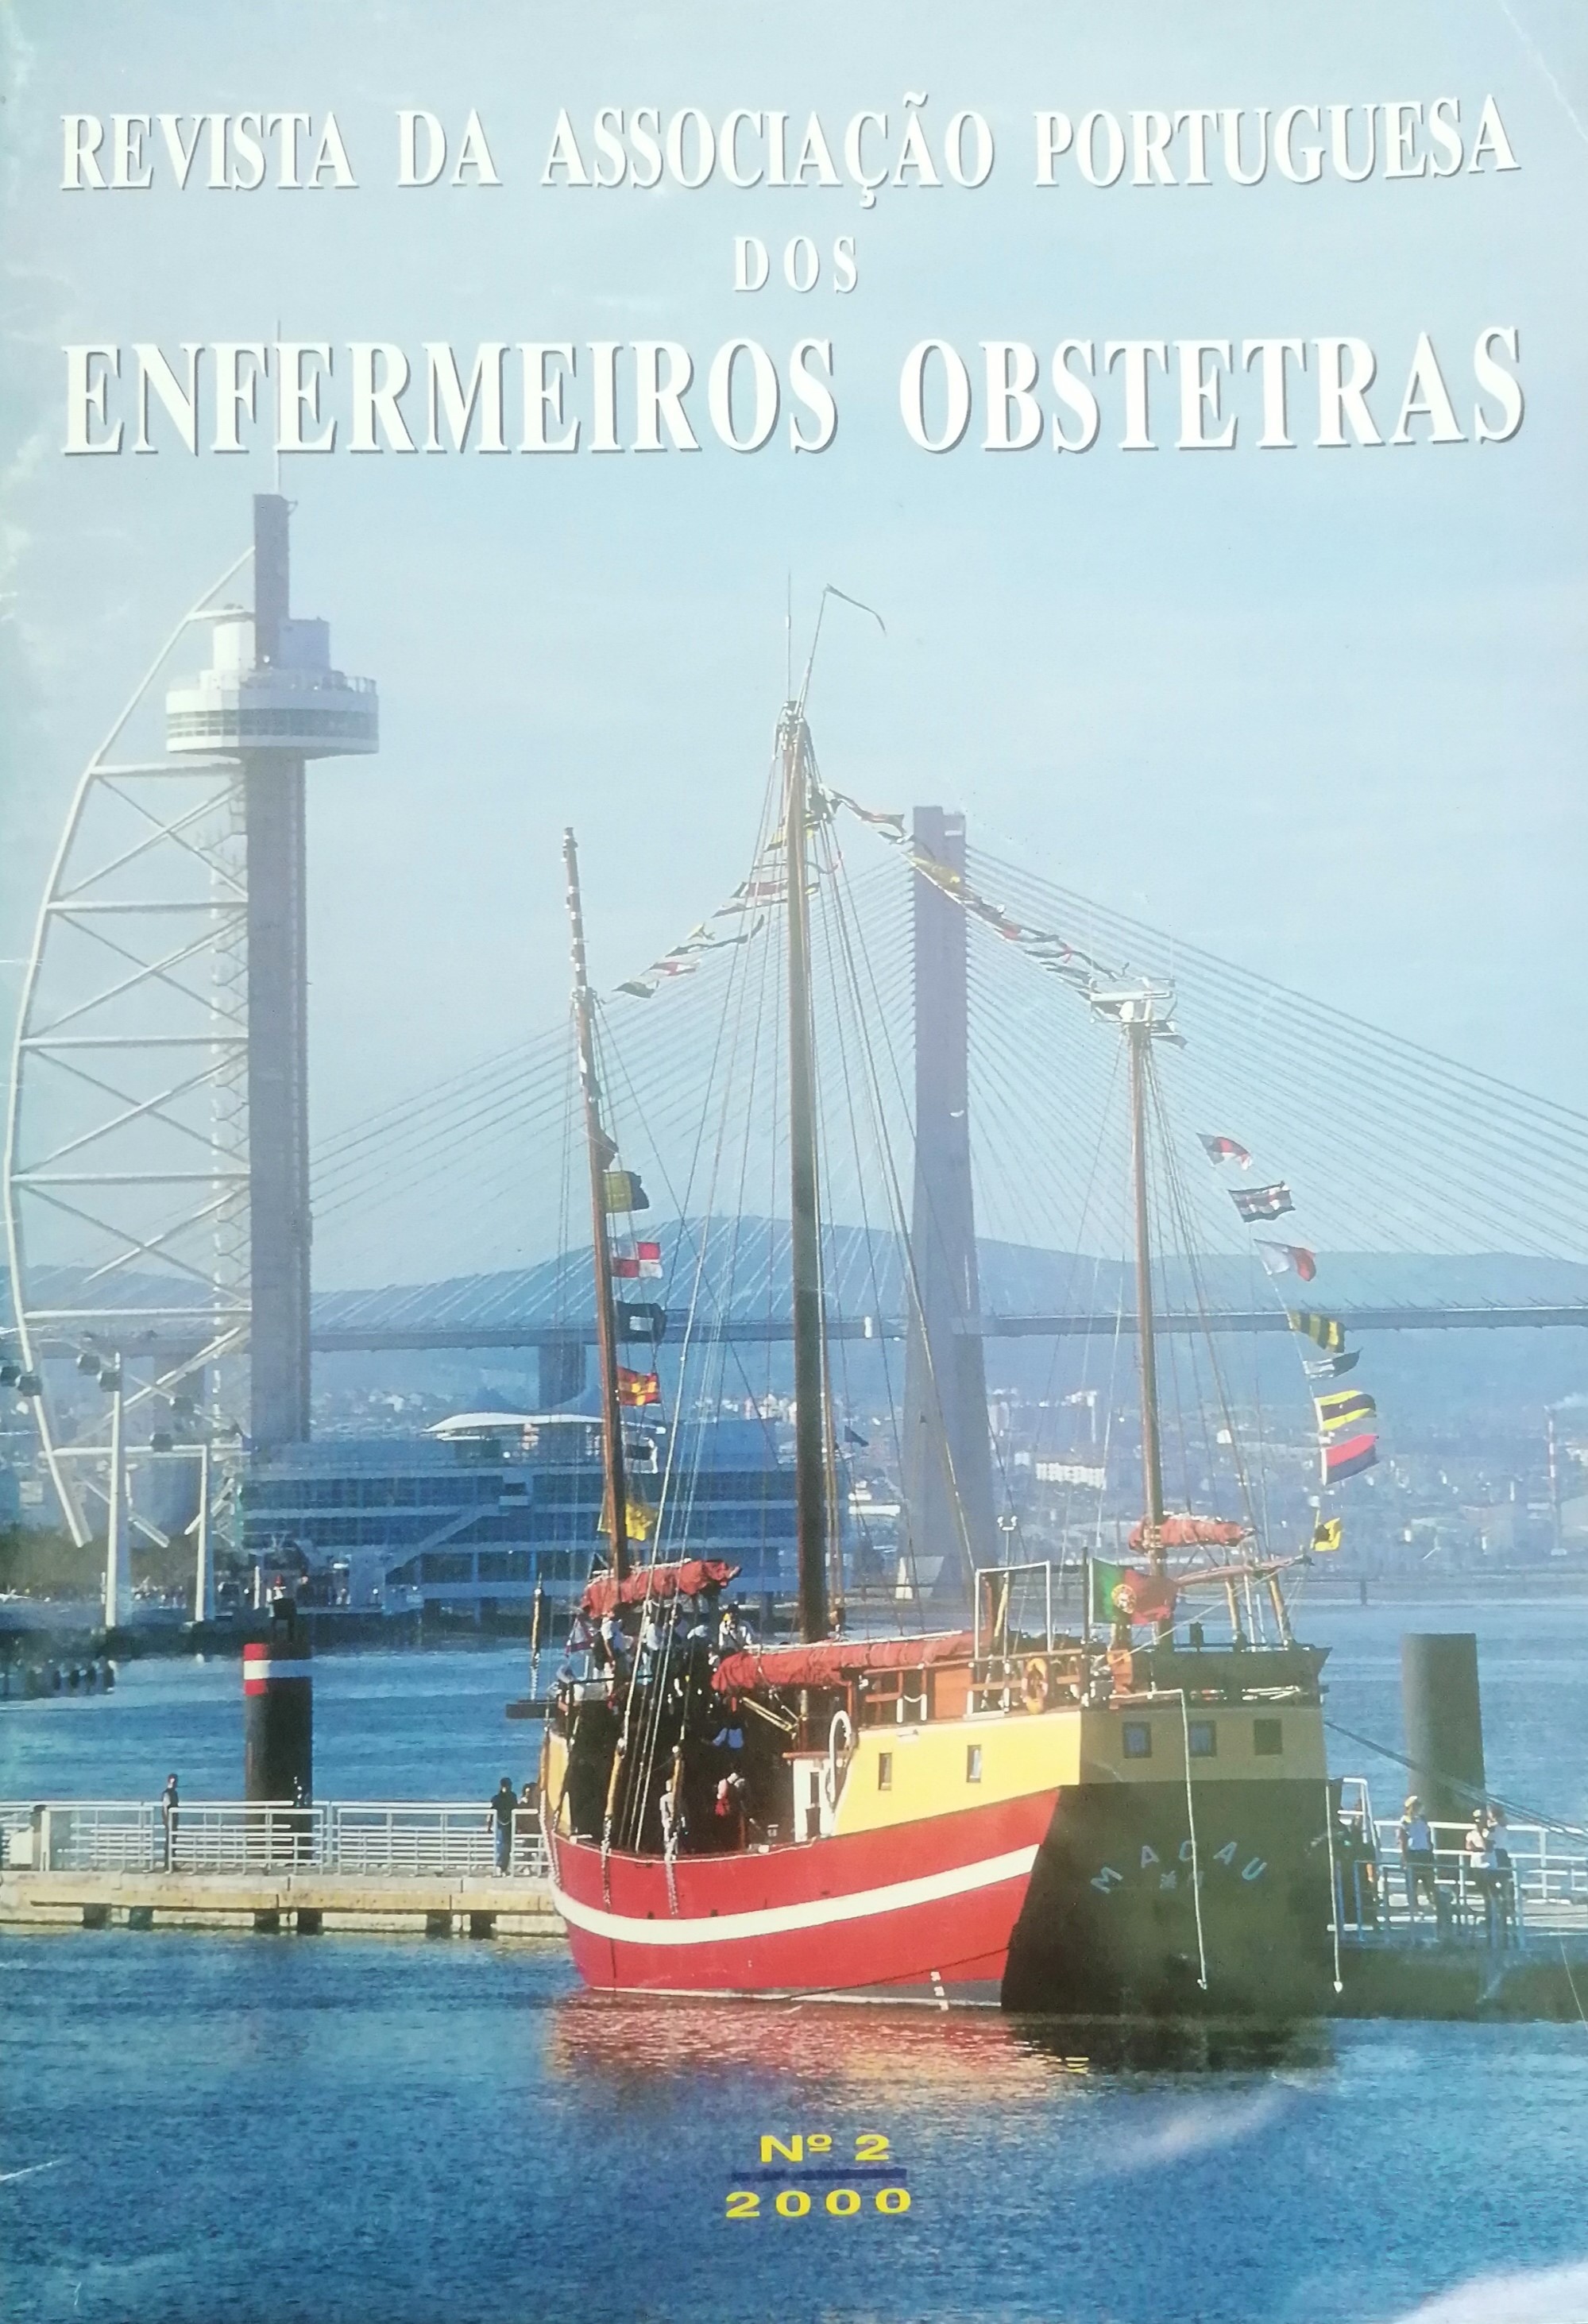 					Ver N.º 2 (2000): Revista da Associação Portuguesa de Enfermeiros Obstetras
				